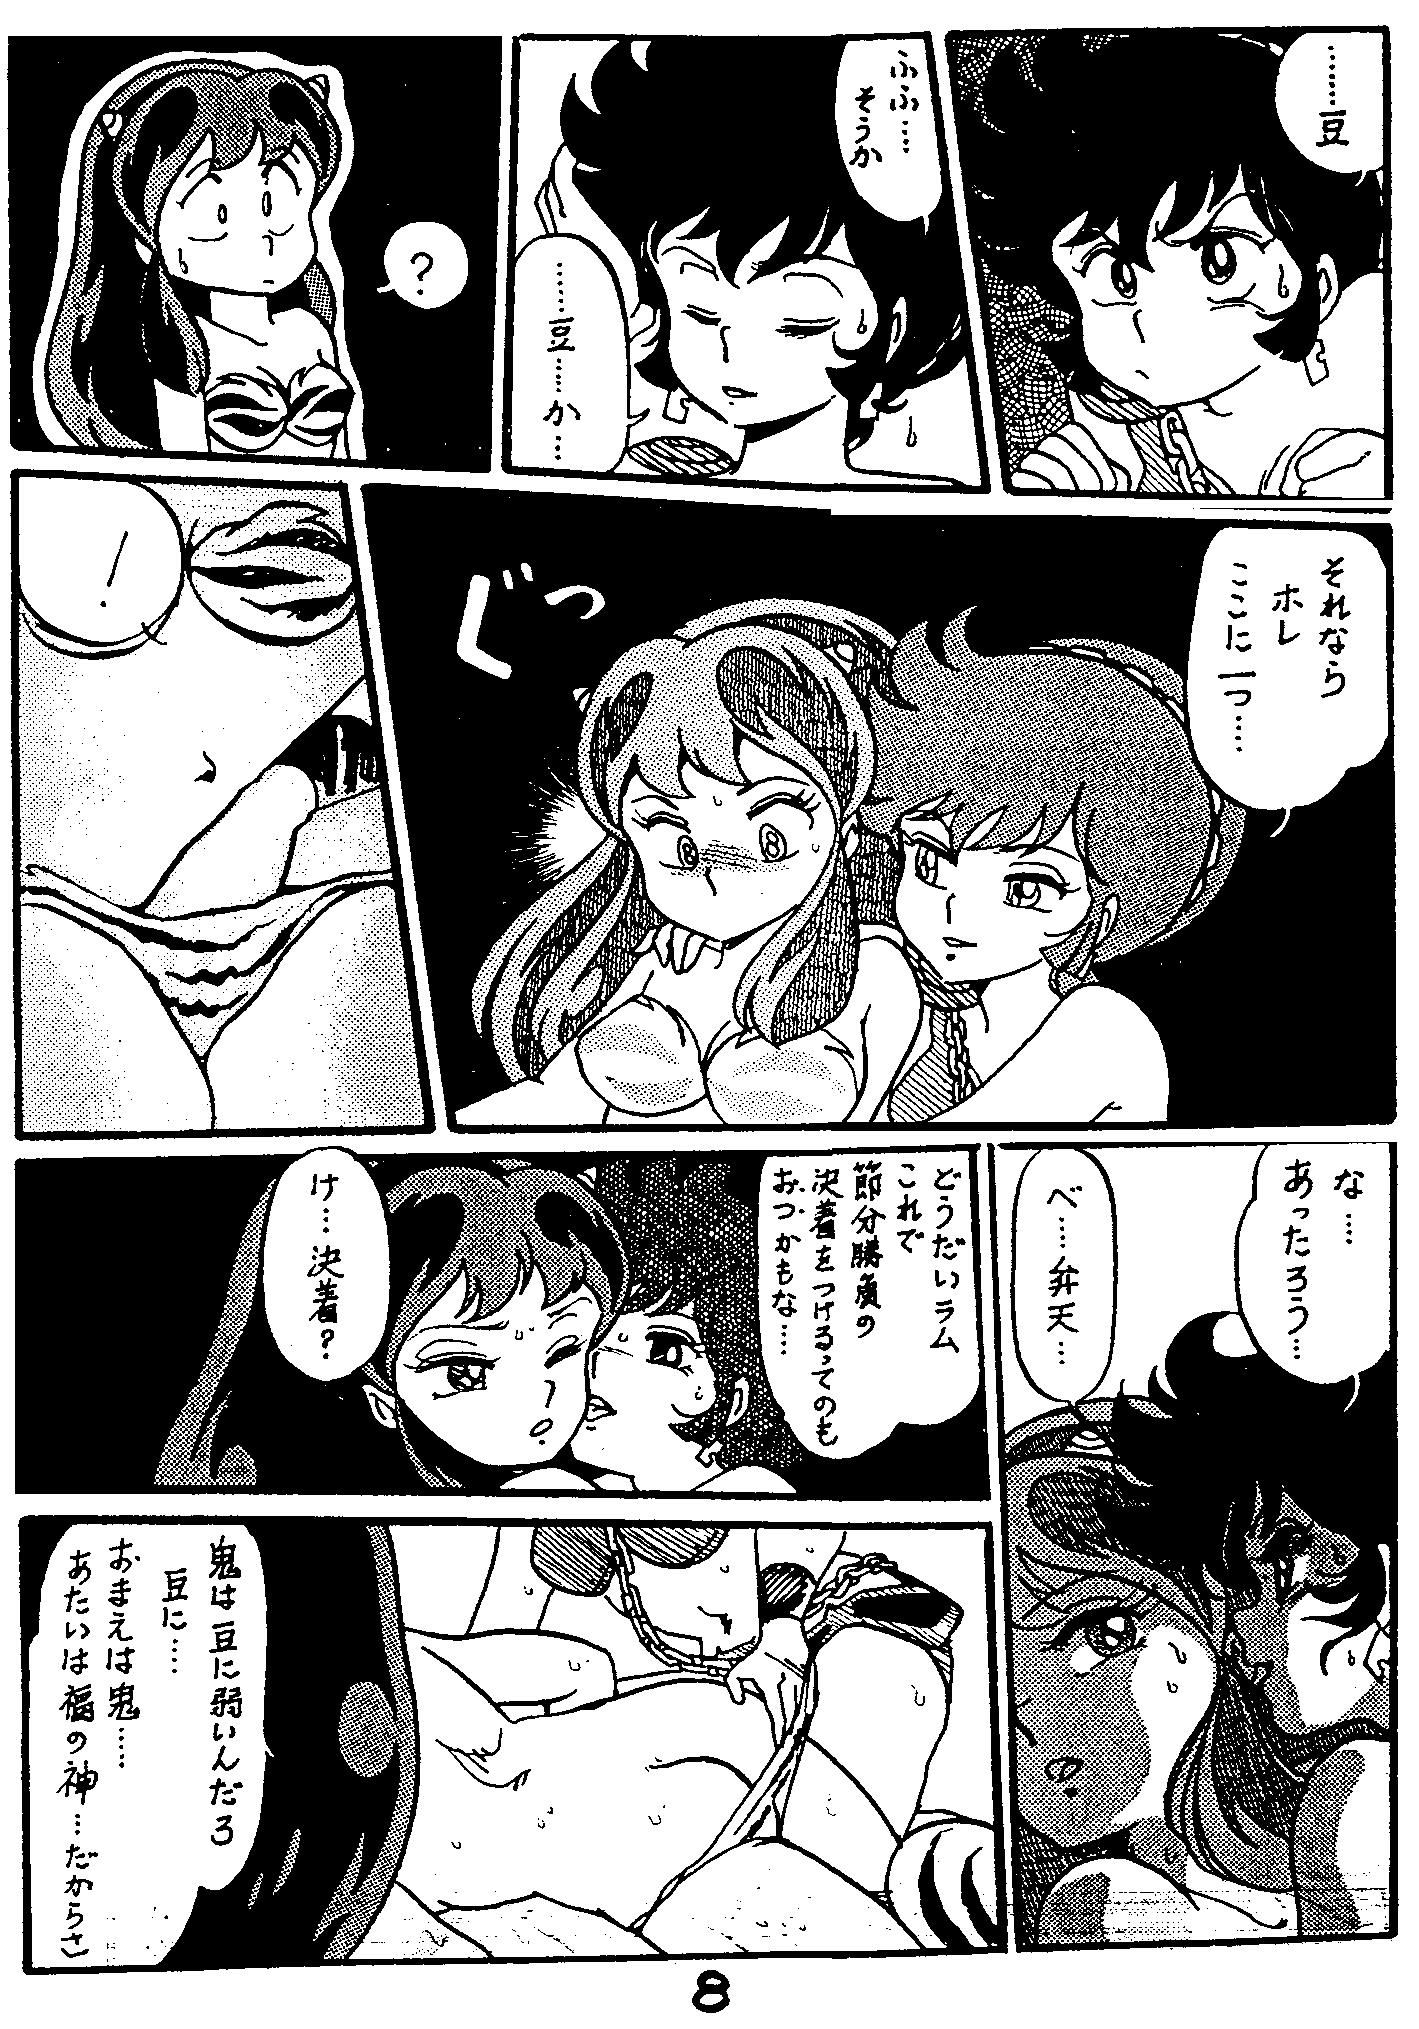 Semen Otome ni Ashita wa Nai - Urusei yatsura Celebrity Nudes - Page 2